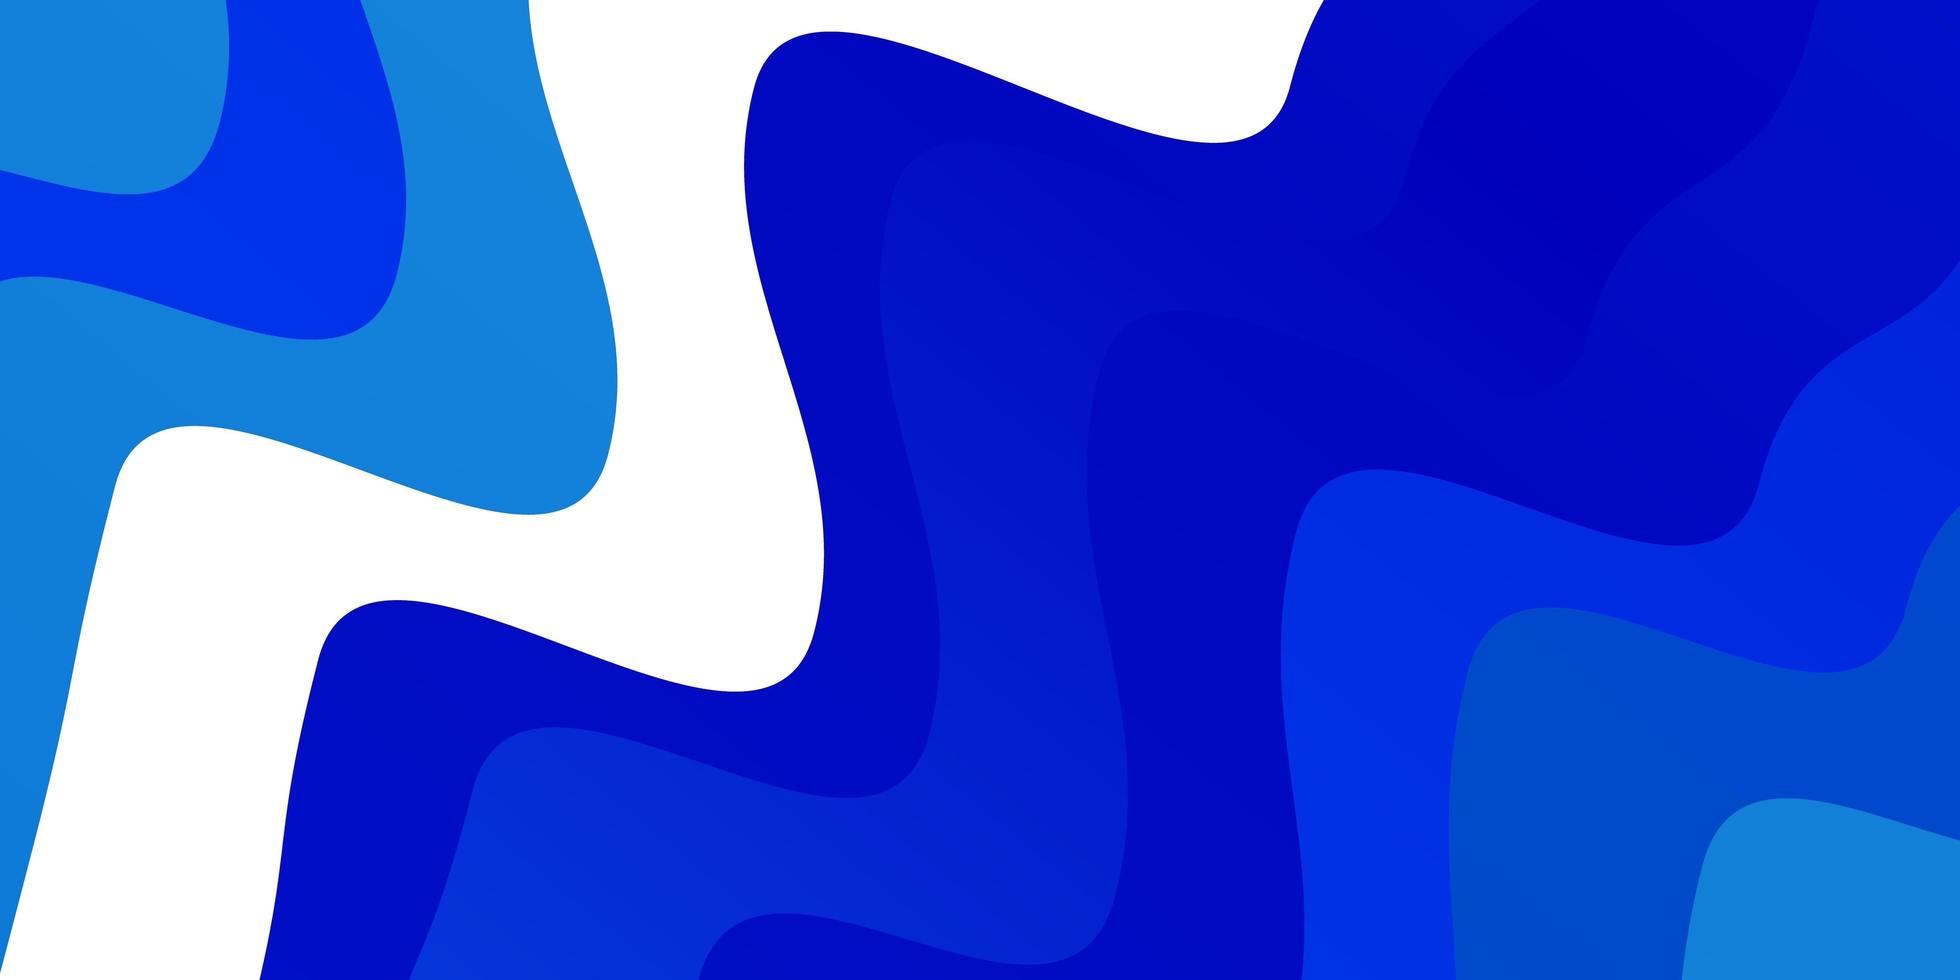 fond de vecteur bleu clair avec des lignes tordues illustration abstraite avec motif d'arcs dégradés pour les brochures de livrets d'affaires